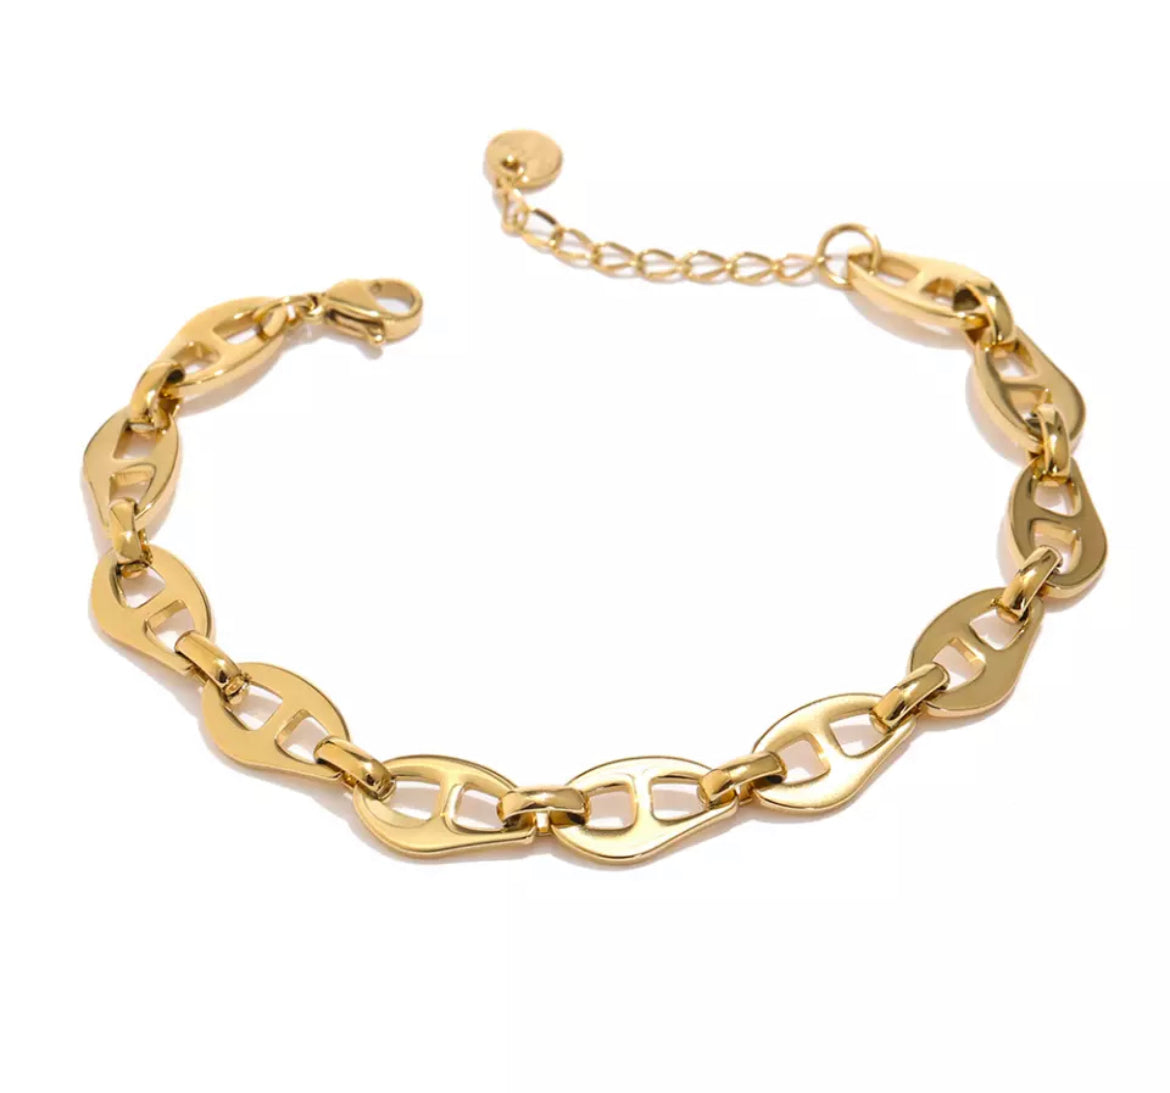 Gold vintage style link bracelet